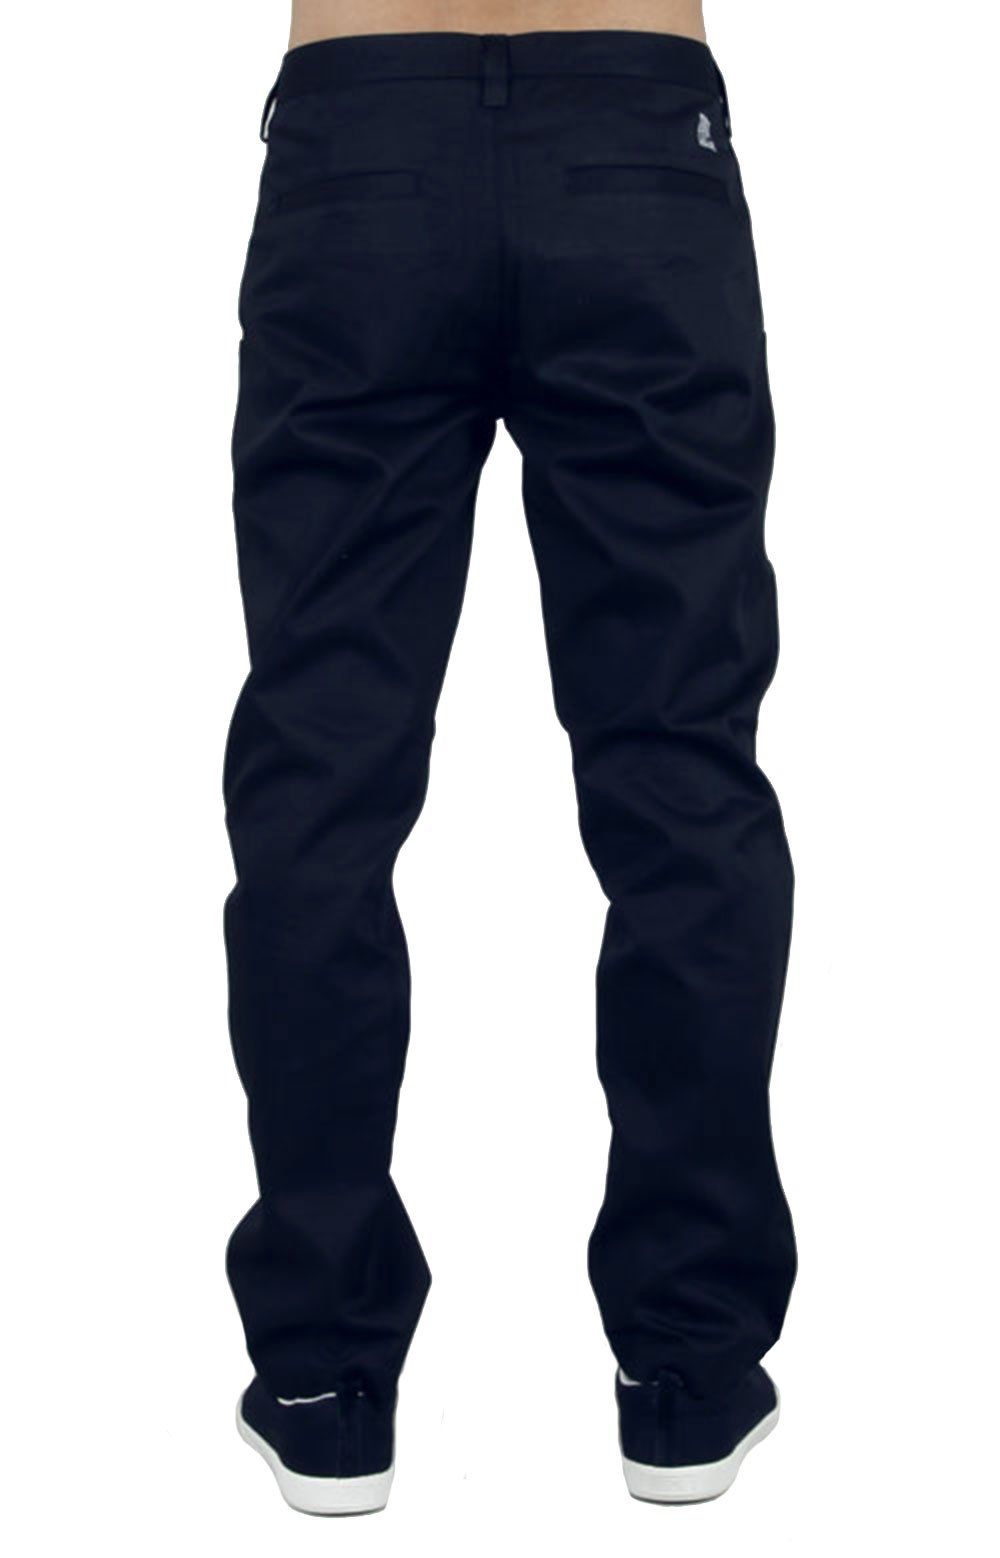 Classic Chino Pants - Navy